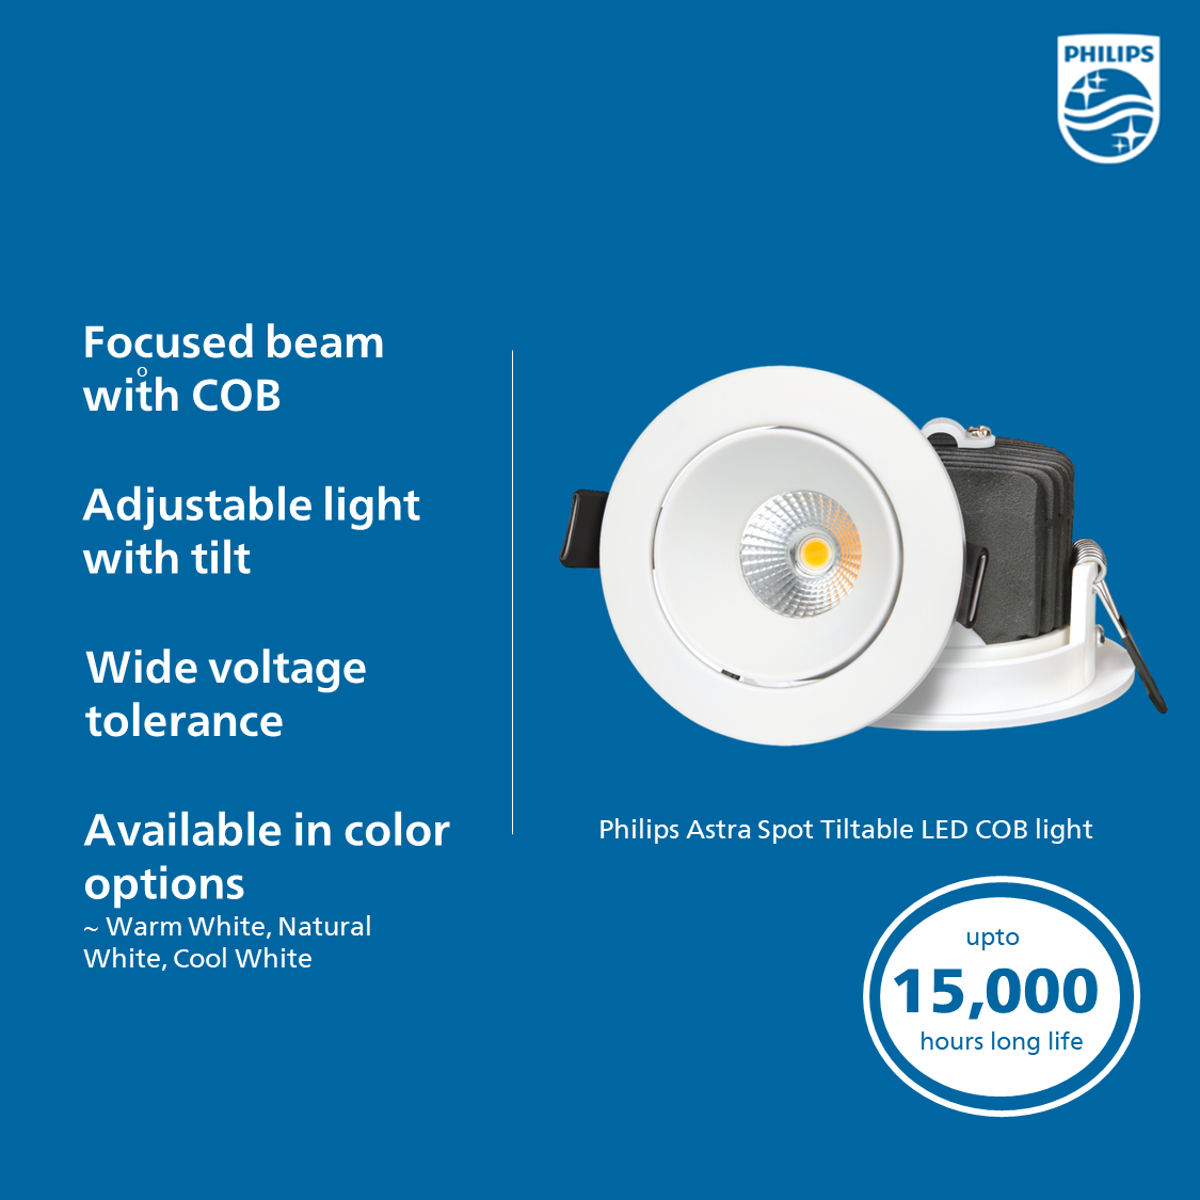 Philips Astra Spot Tiltable LED COB light